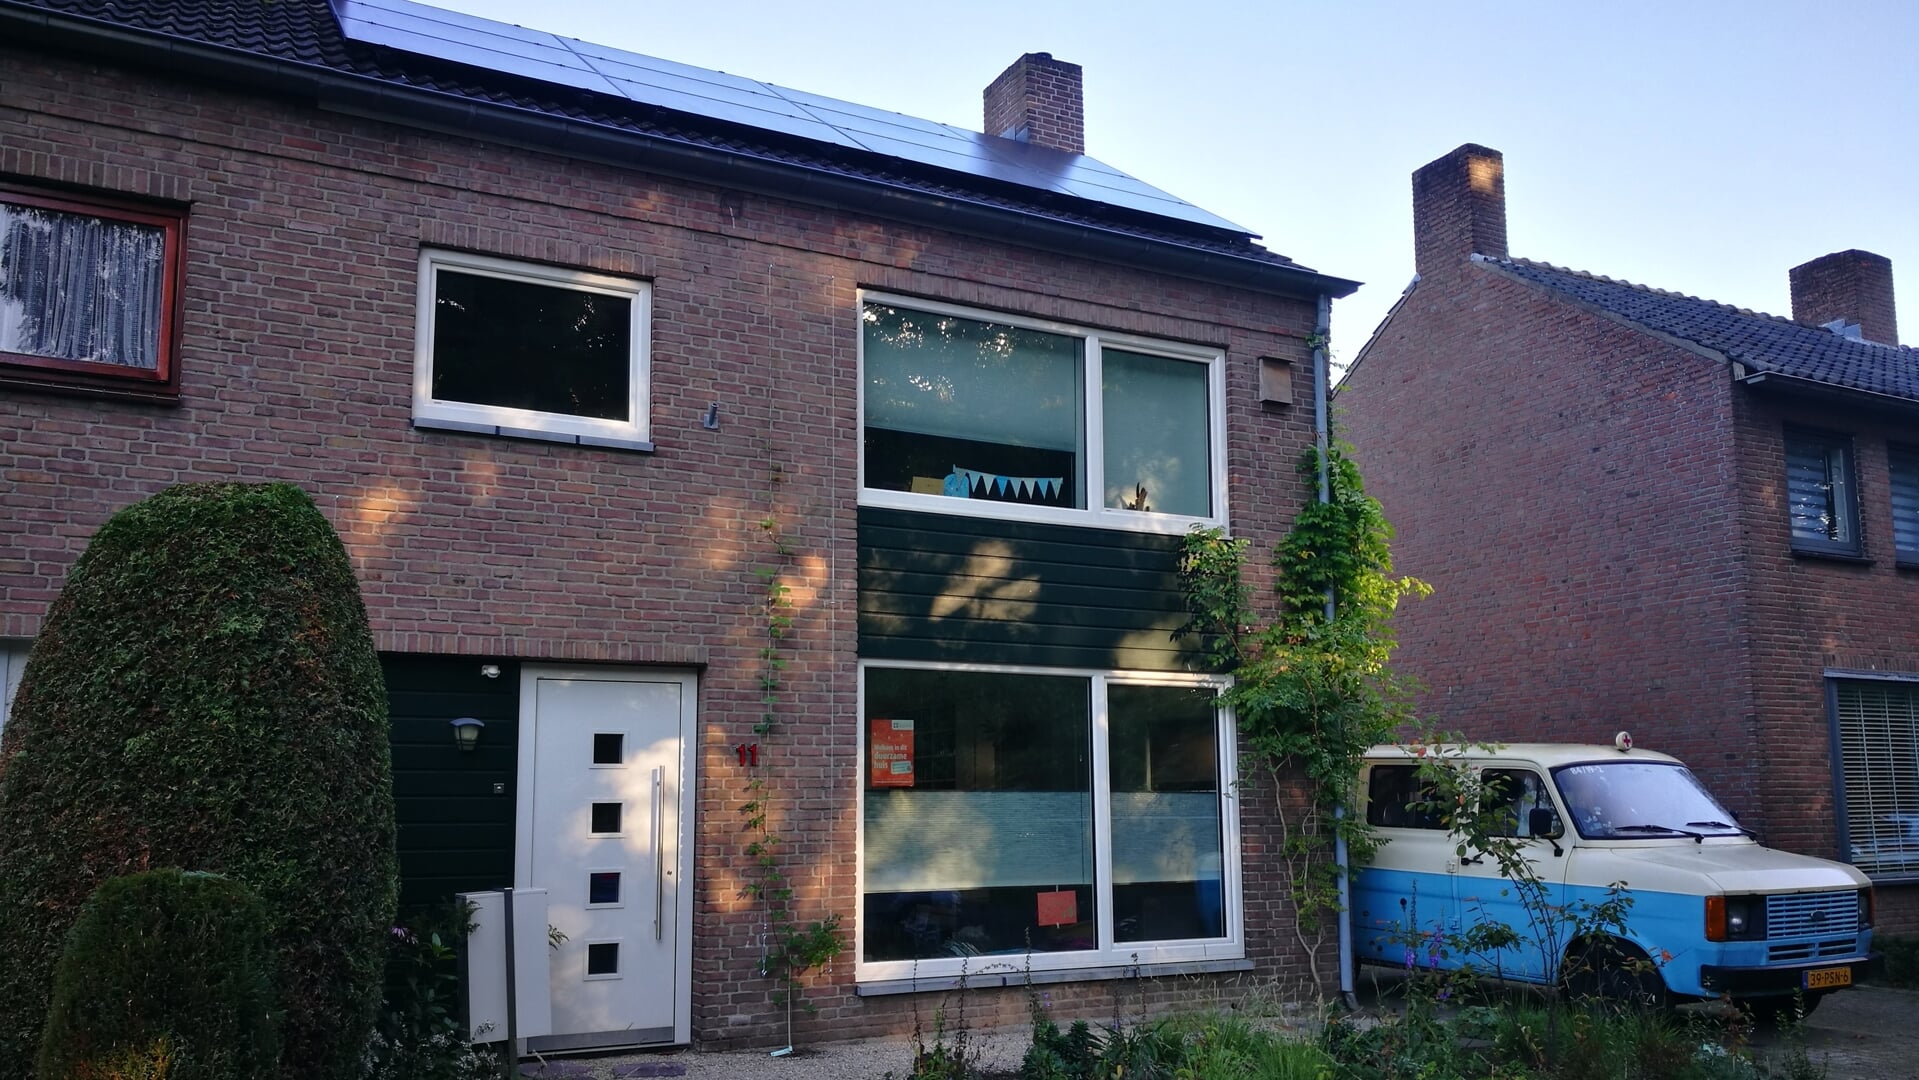 Tijdens de thematours geven bewoners van duurzame huizen uitleg over hoe zij hun woning energiezuiniger hebben gekregen. In Boxtel doet Karla Niggebrugge mee.